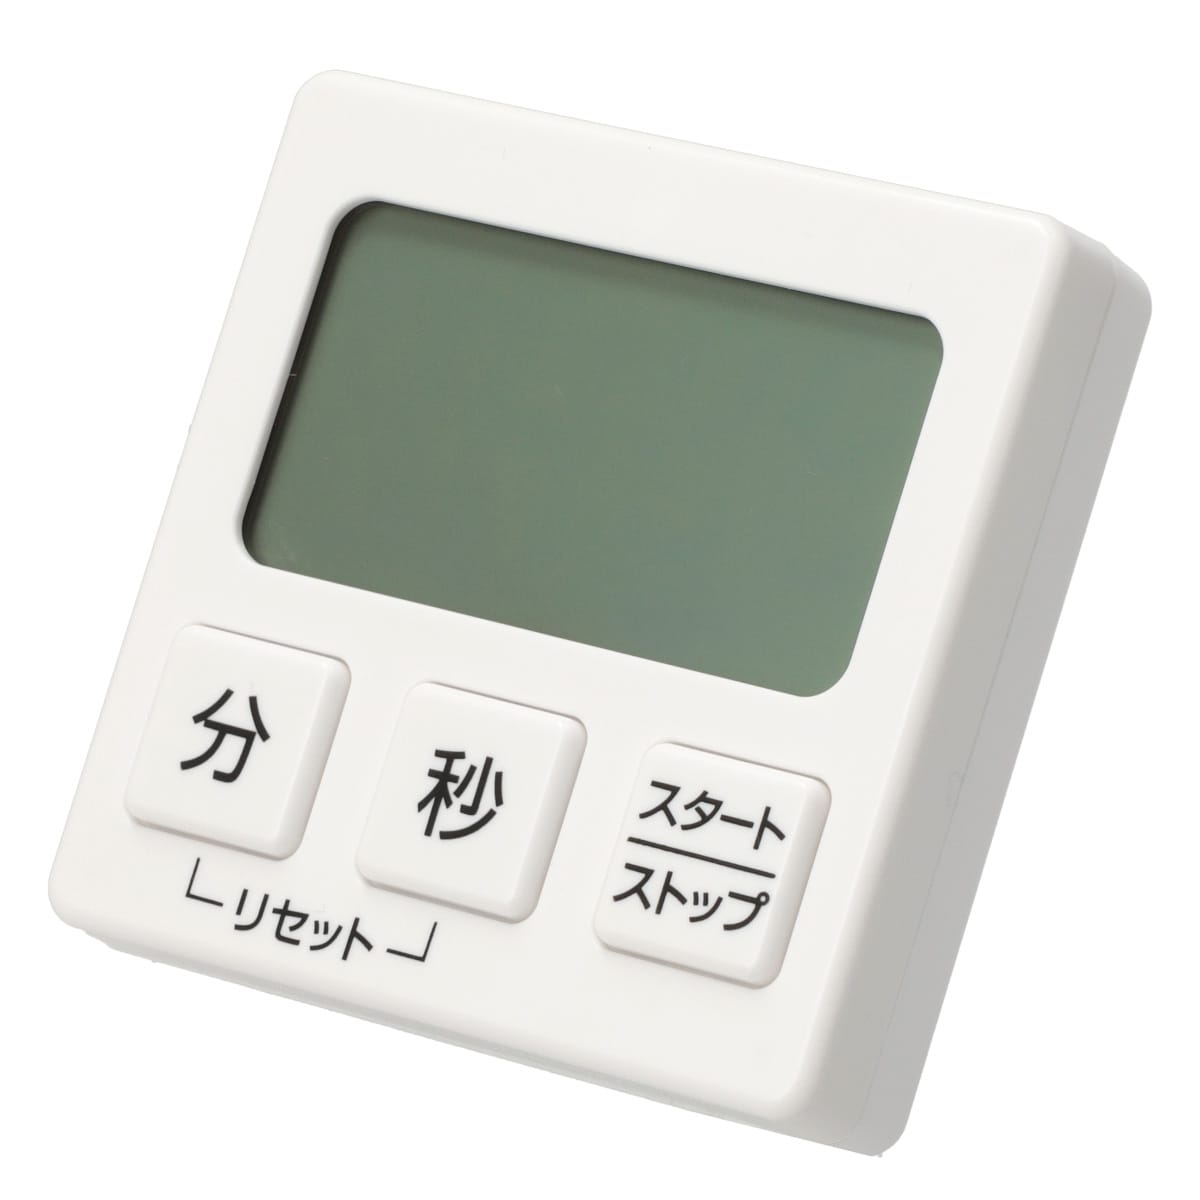 デジタルキッチンタイマー (3ボタン/M) ニトリ 